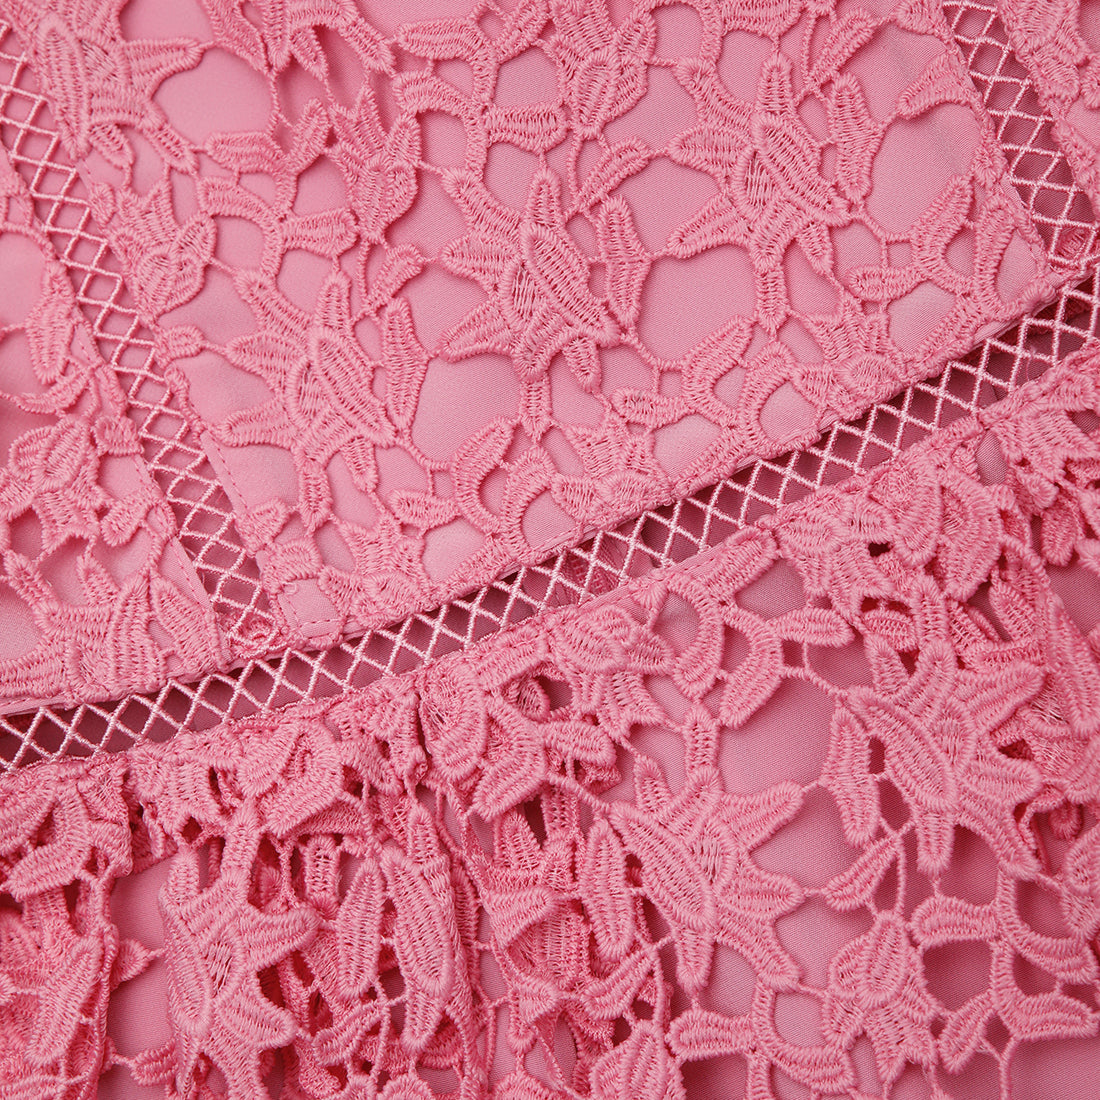 Pink Azaelea Lace Dress